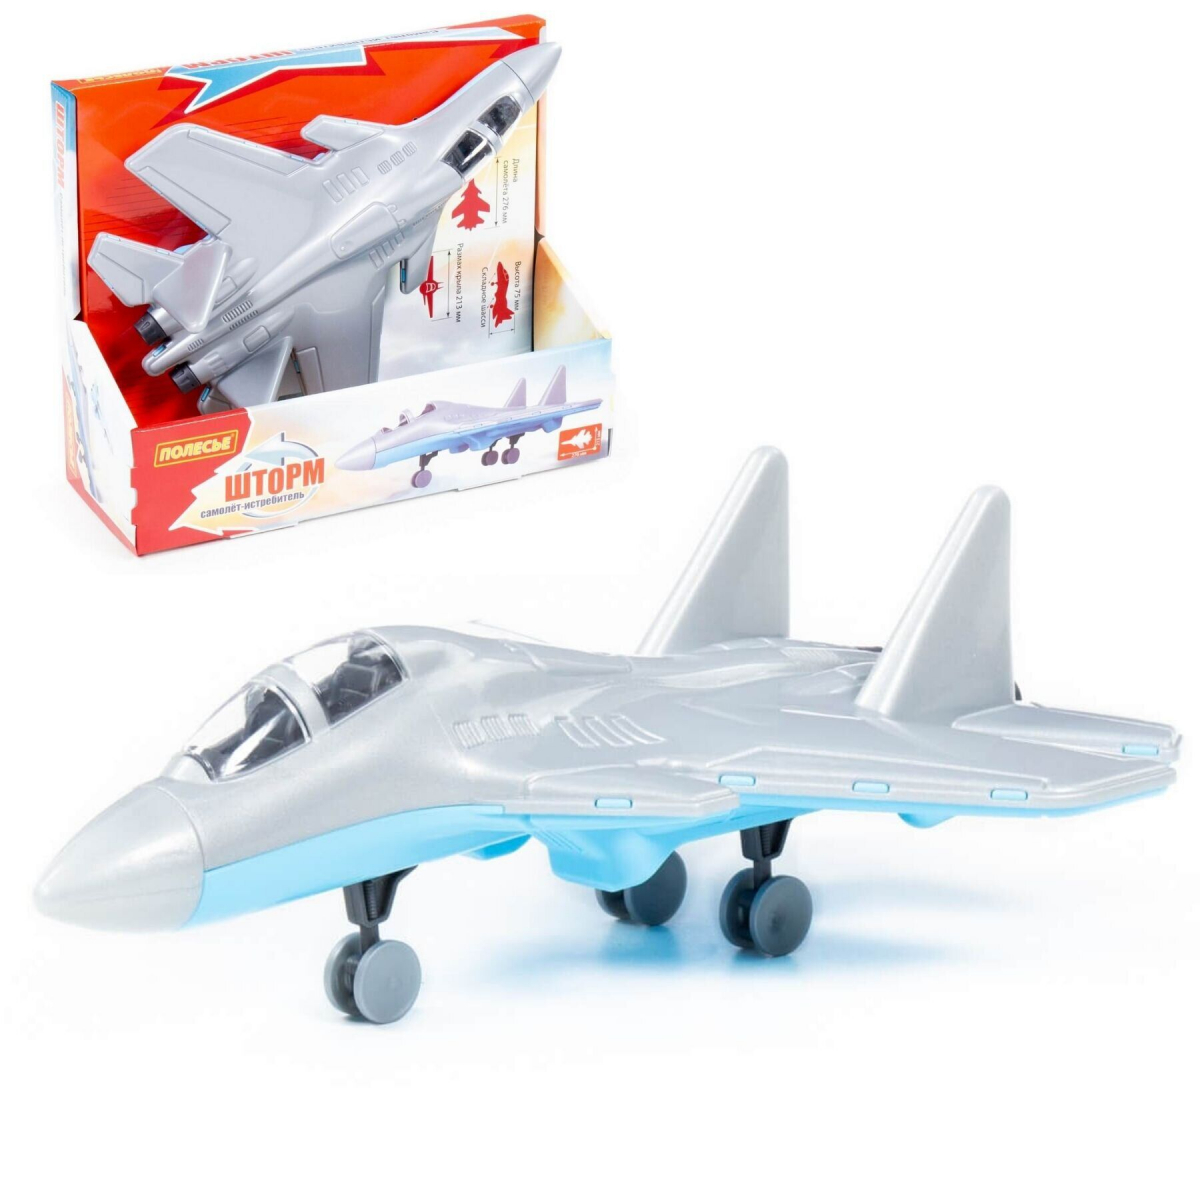 Іграшковий літак-винищувач "Шторм", Polesie (83371)